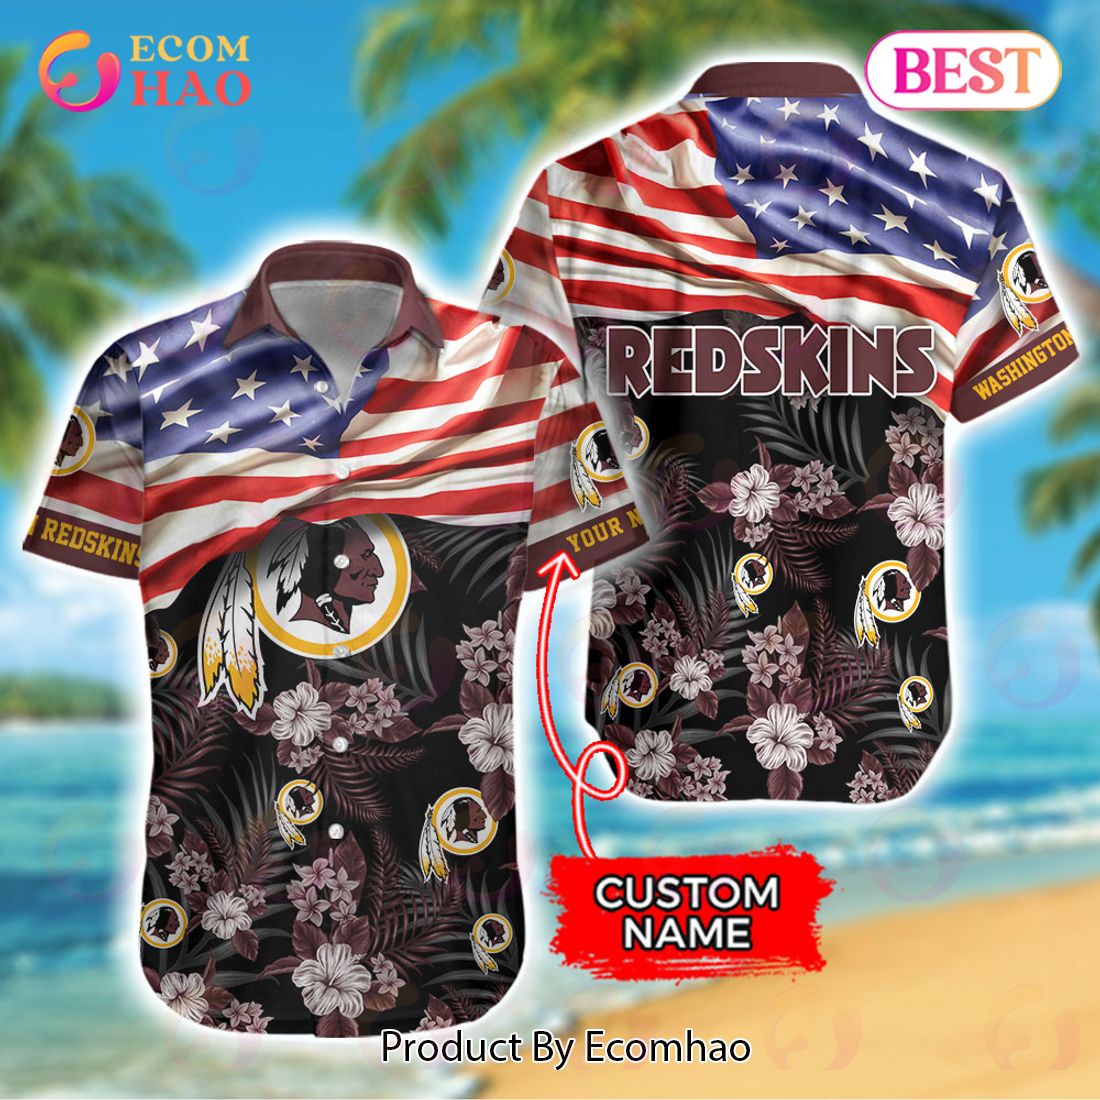 NHL Florida Panthers Hawaiian Shirt,Aloha Shirt,Tropical Birds And